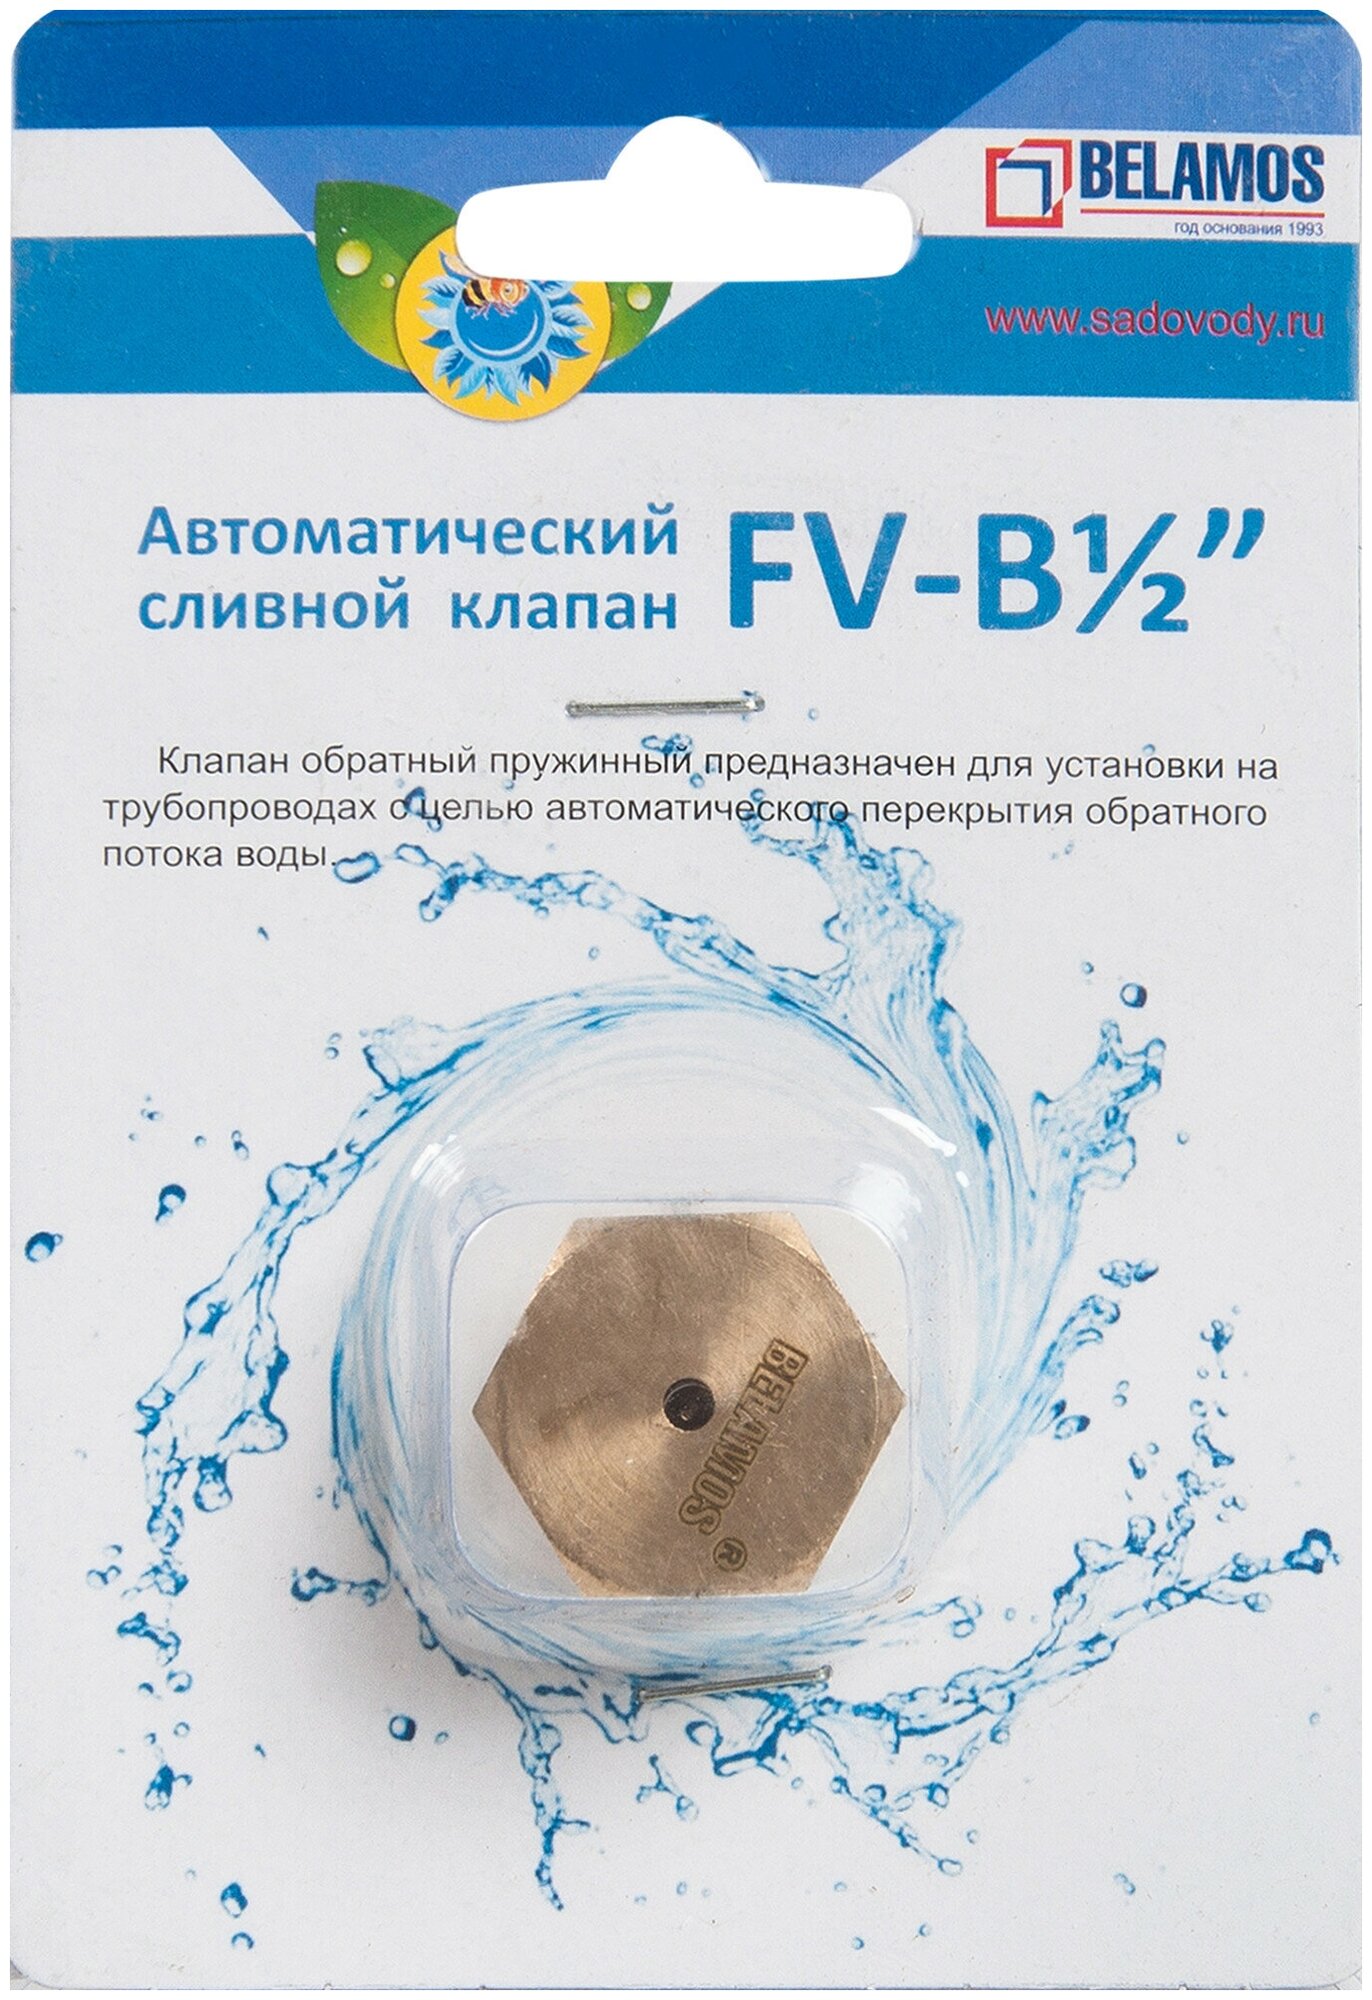 Автоматический сливной клапан FV-B 1/2"Belamos - фотография № 5